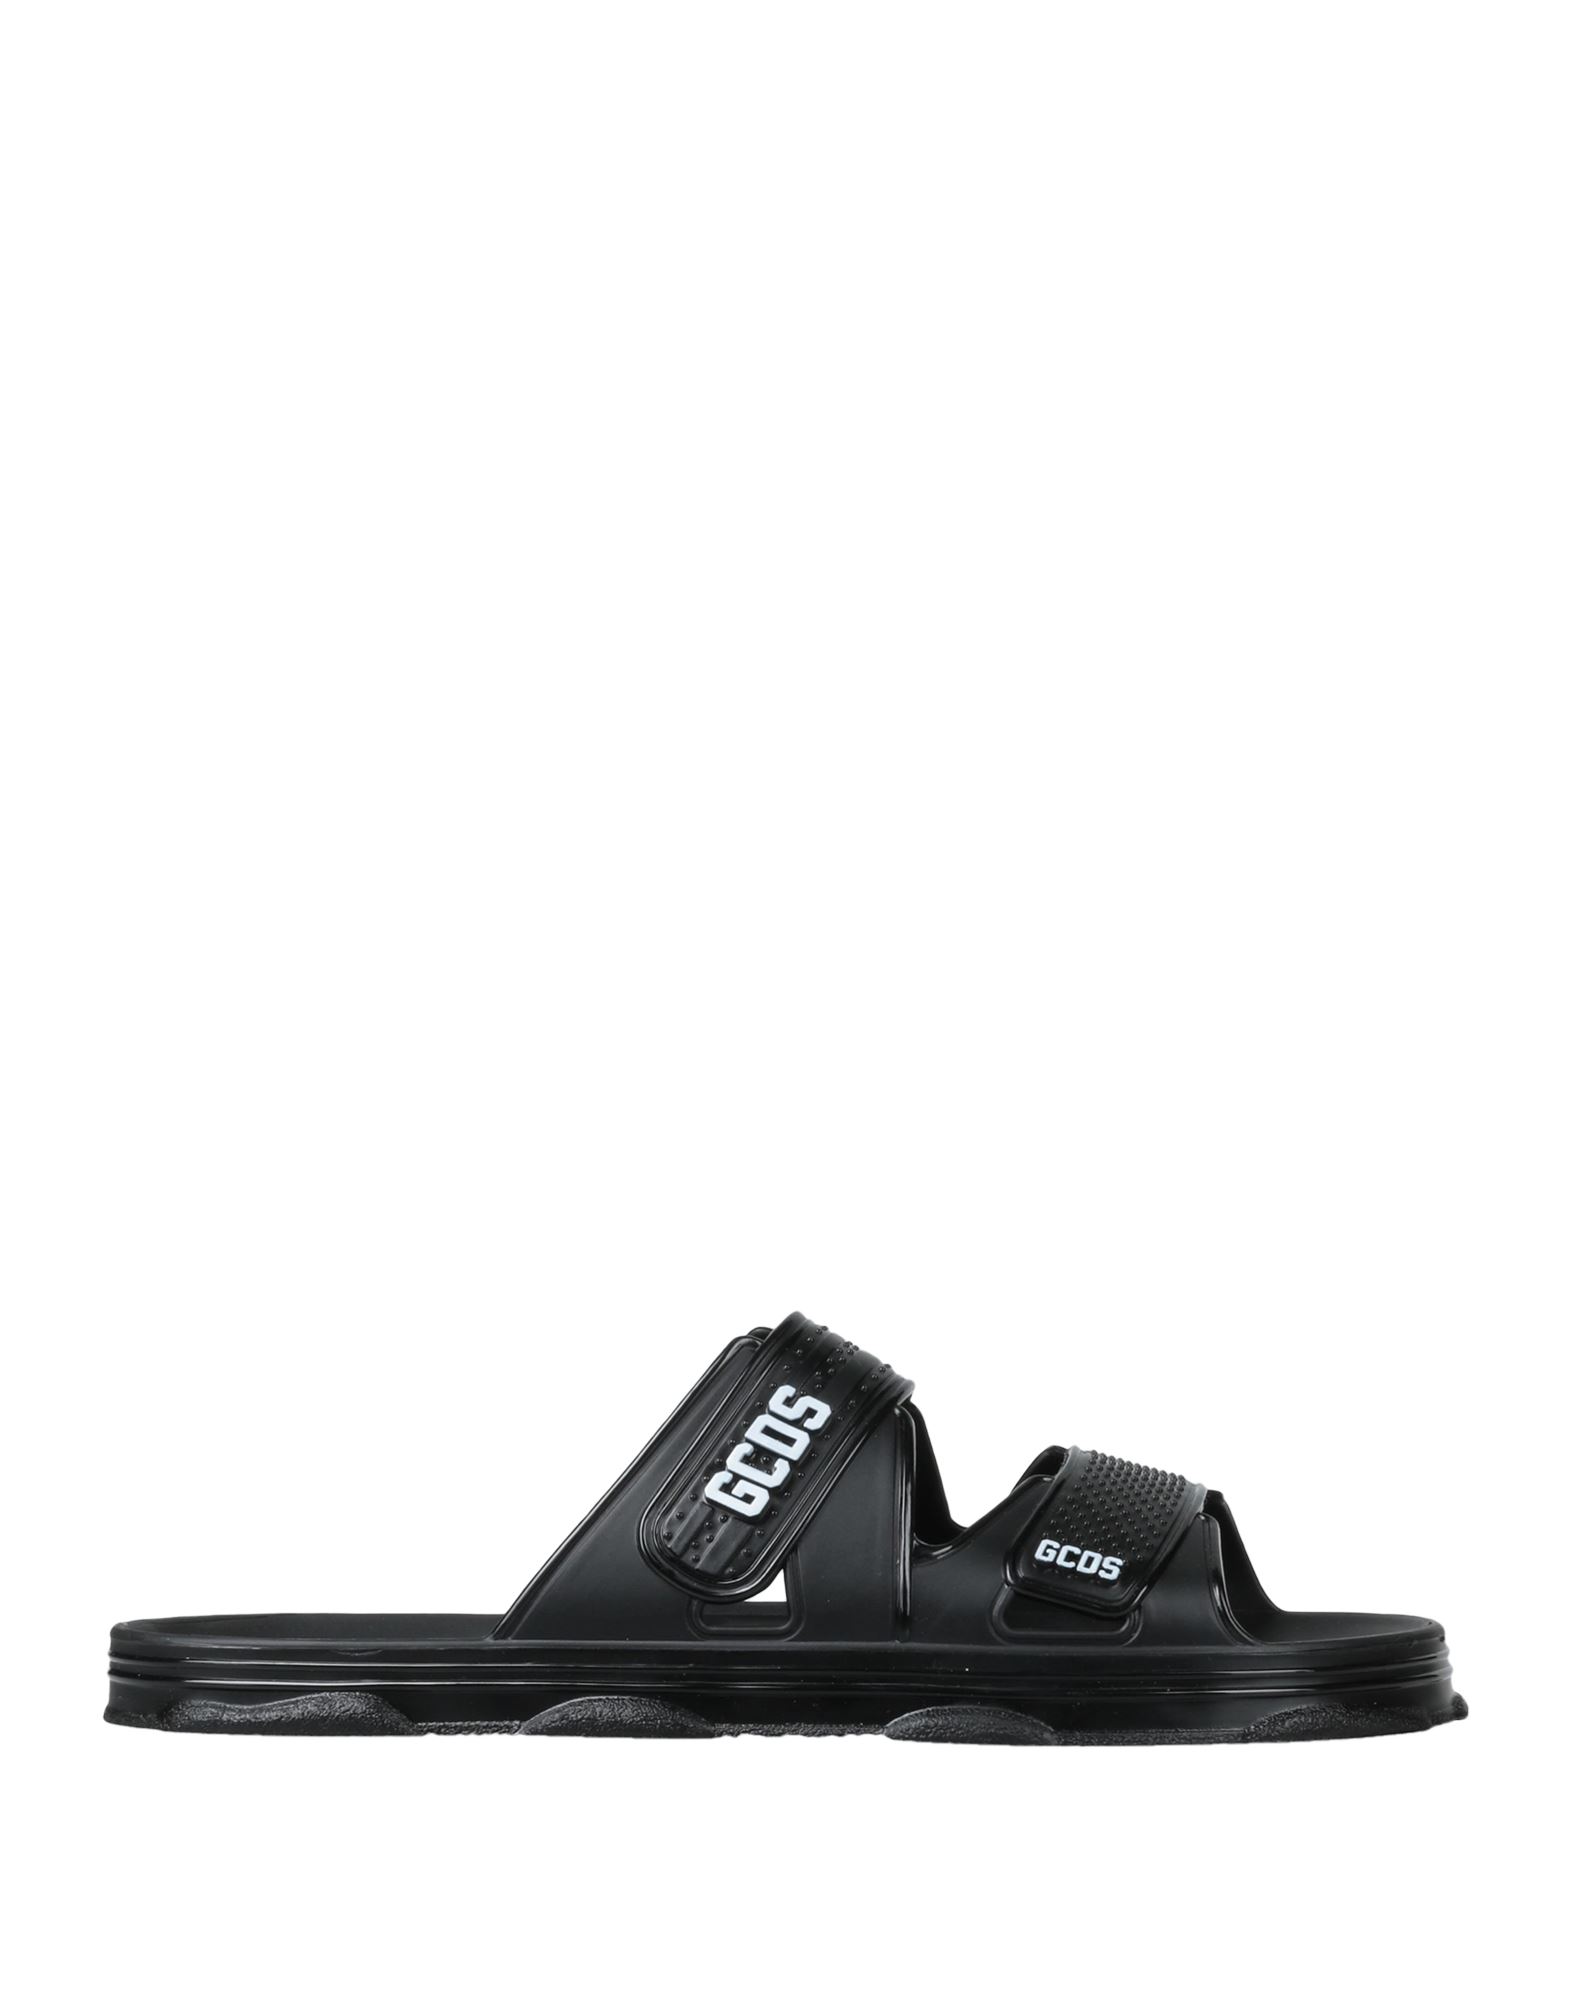 Shop Gcds Man Sandals Black Size 9 Rubber